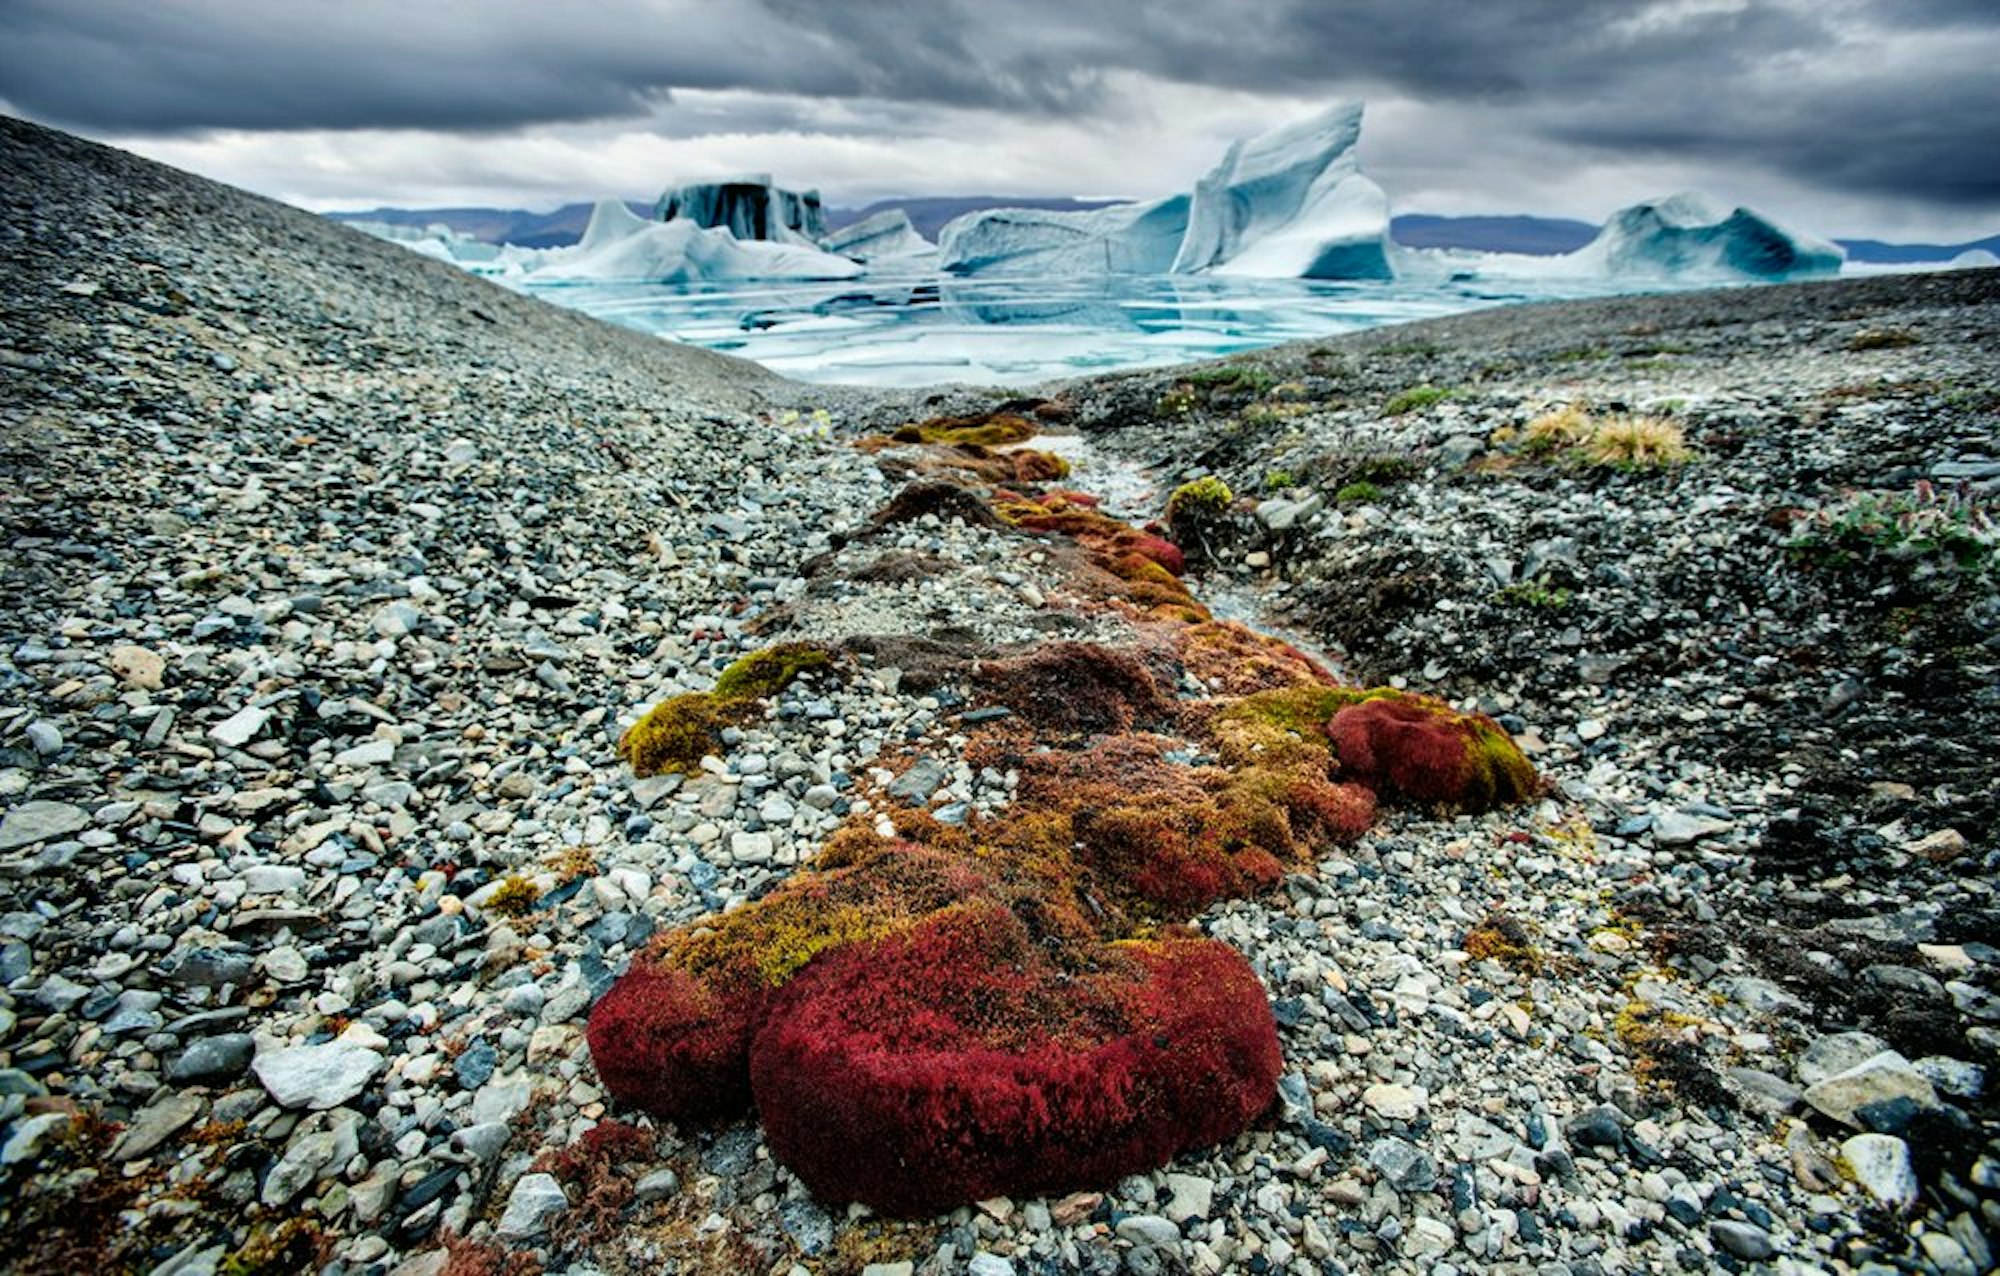 Spärliche Vegetation in rauer Arktis-Landschaft